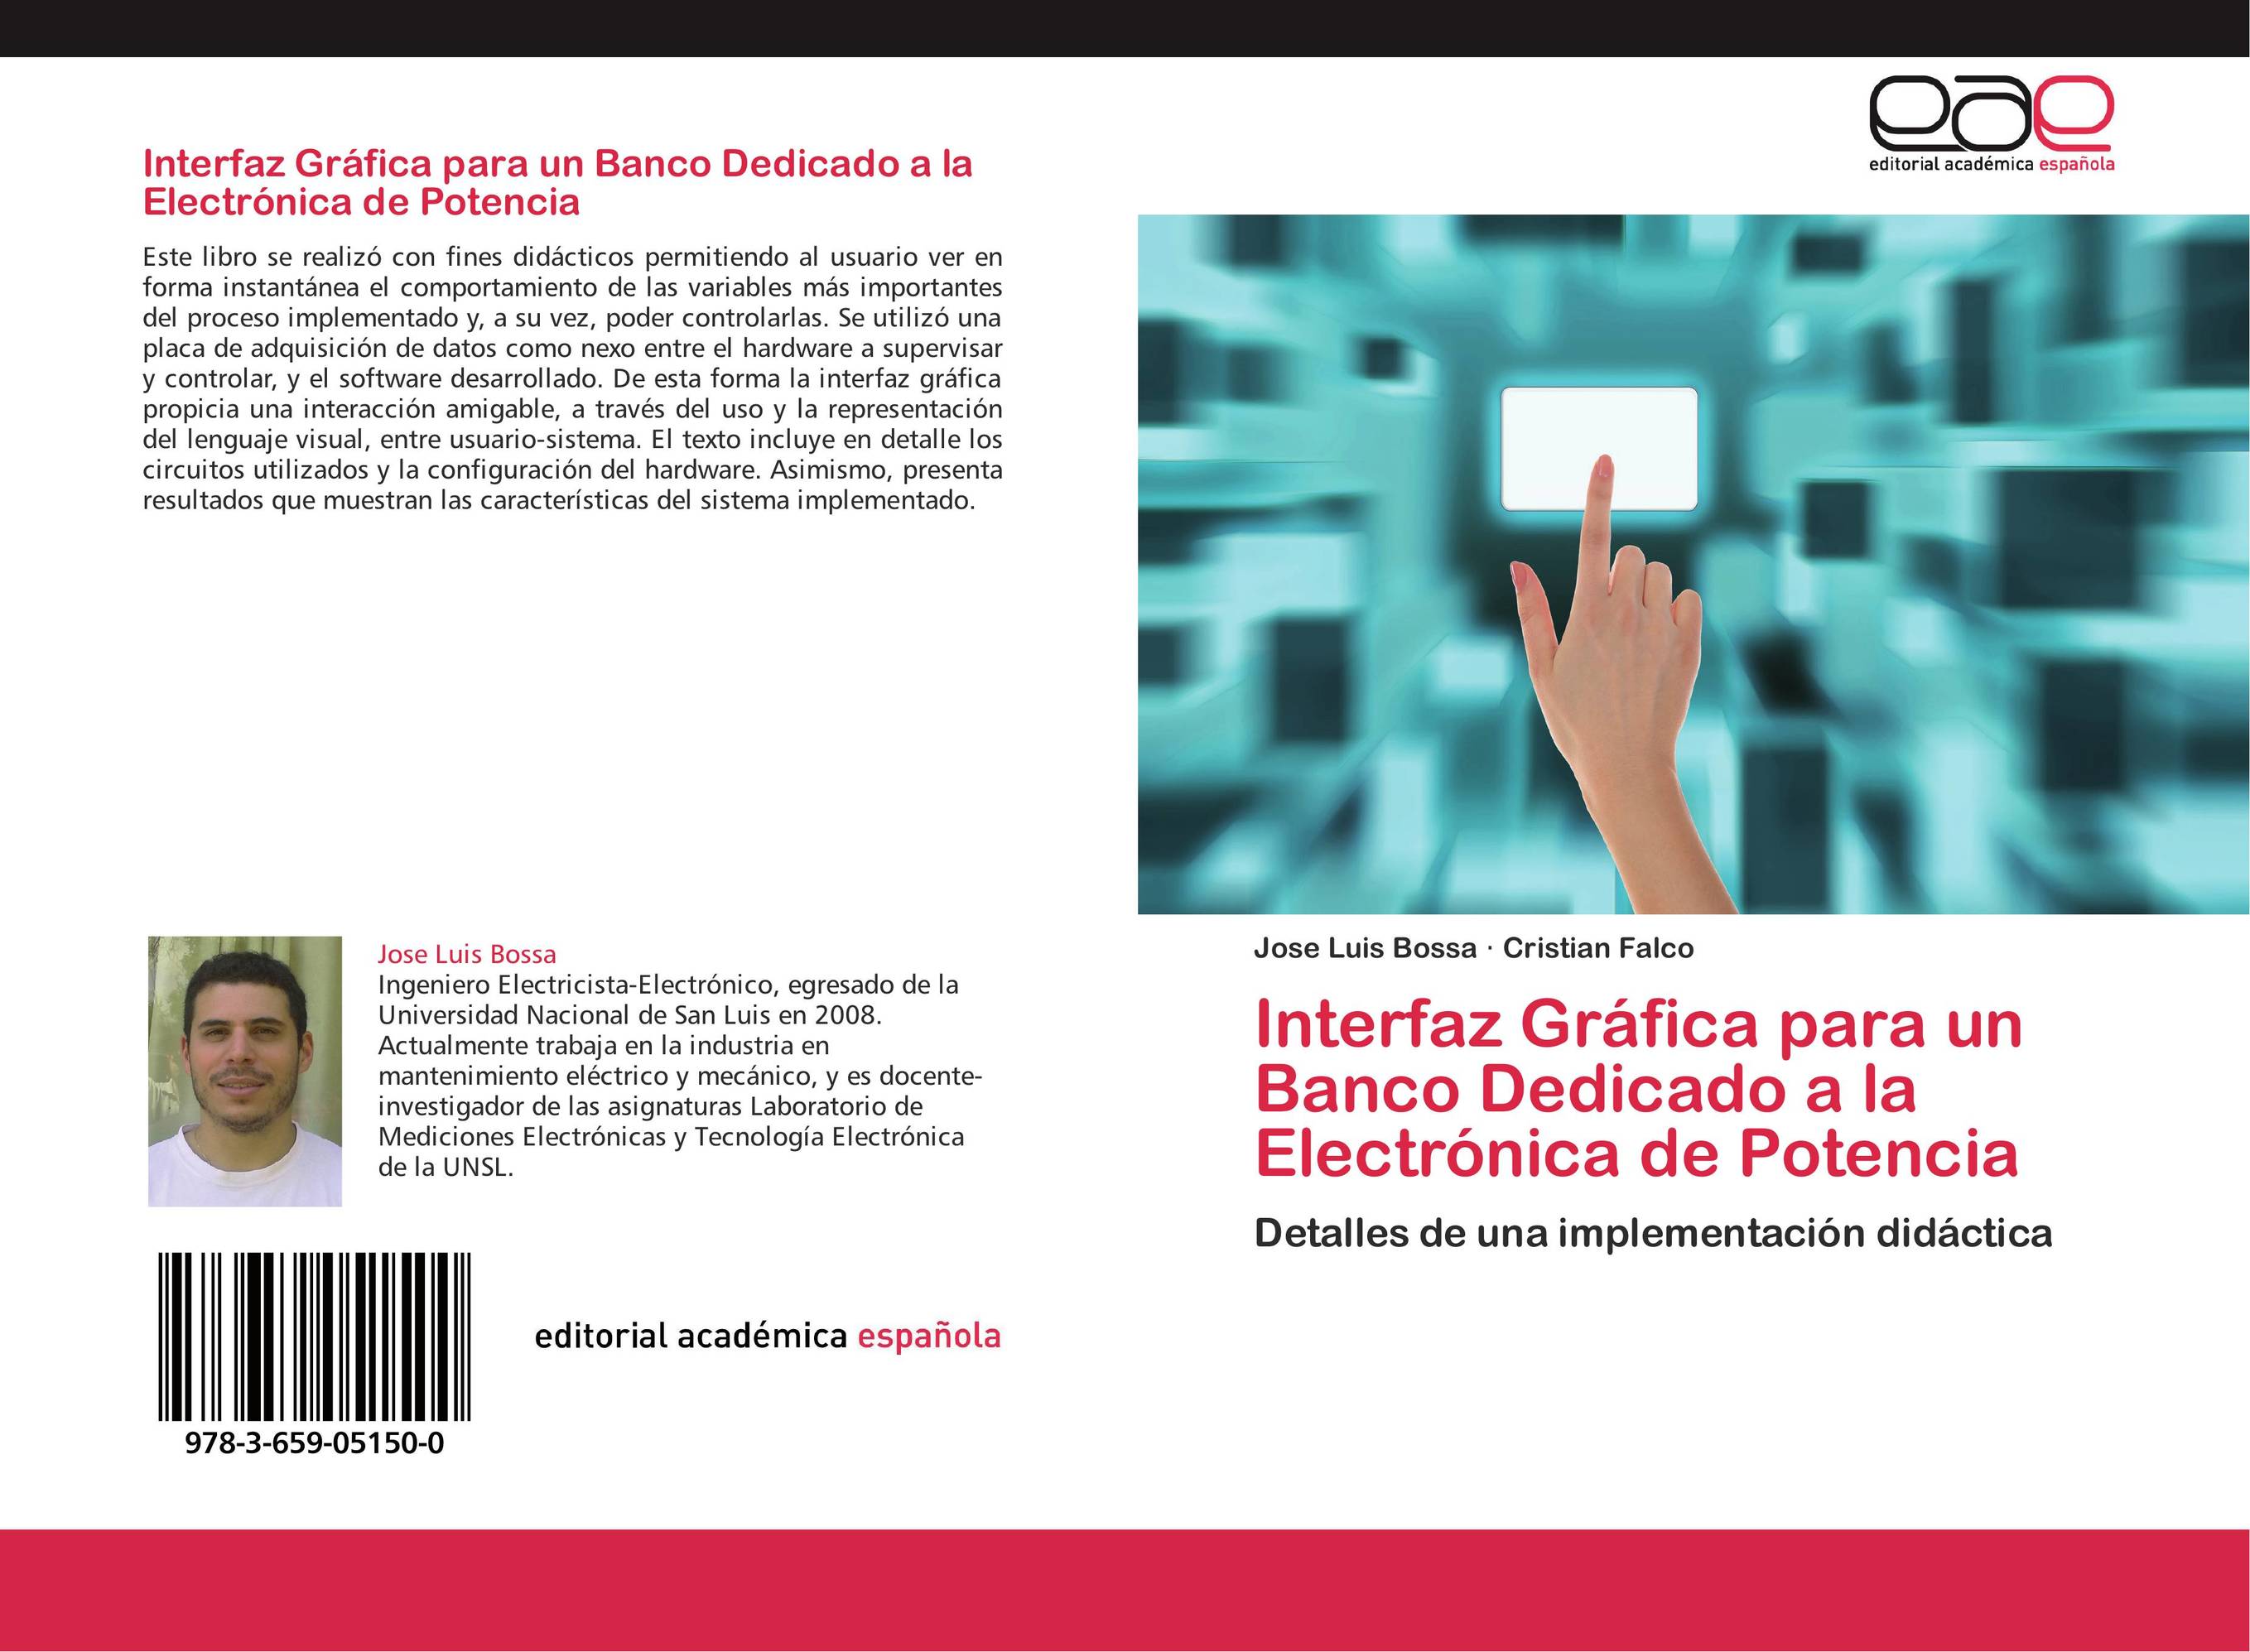 Interfaz Gráfica para un Banco Dedicado a la Electrónica de Potencia